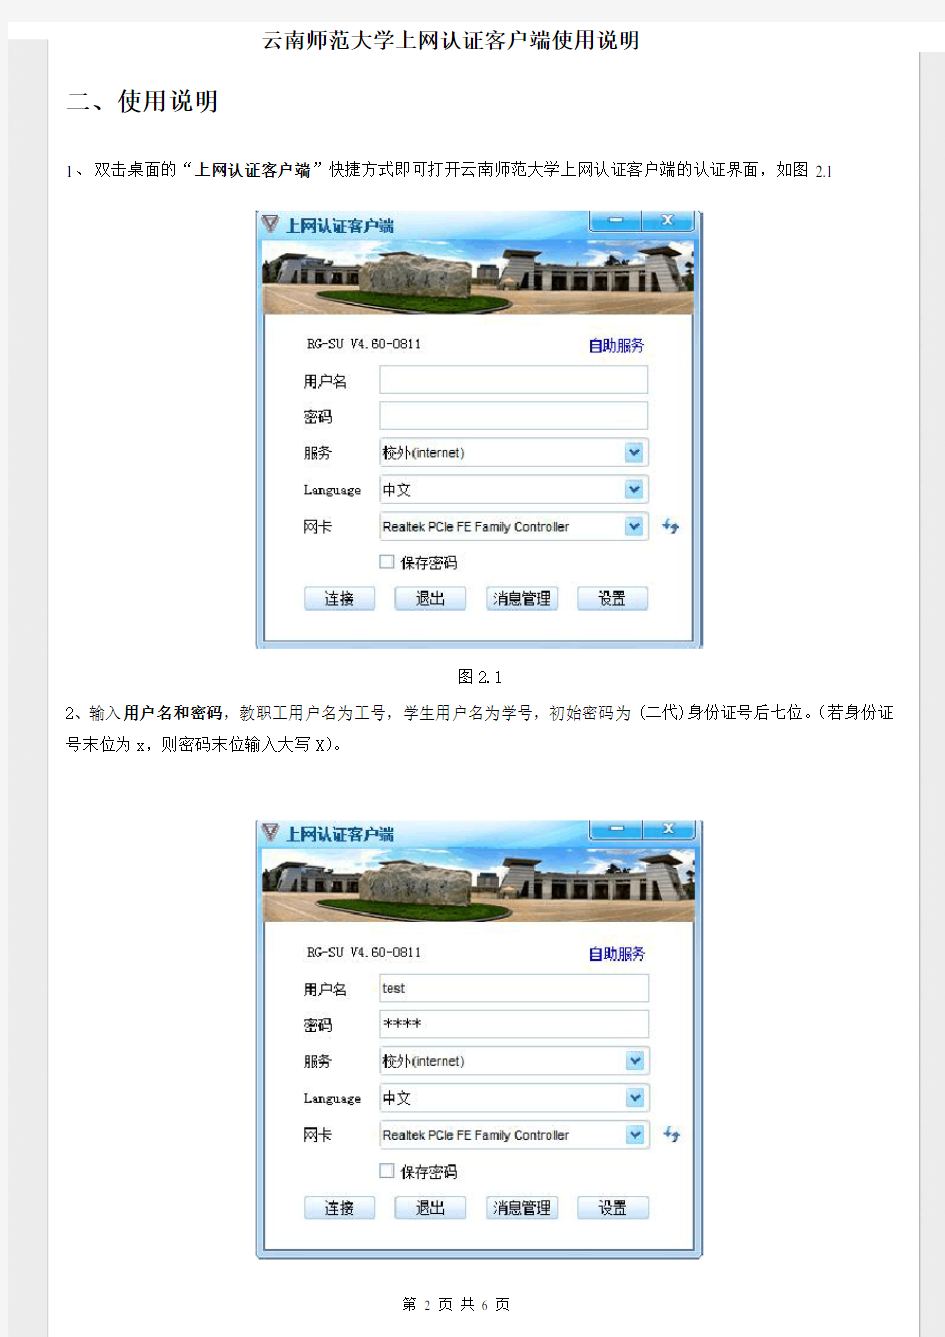 云南师范大学上网认证客户端使用说明书